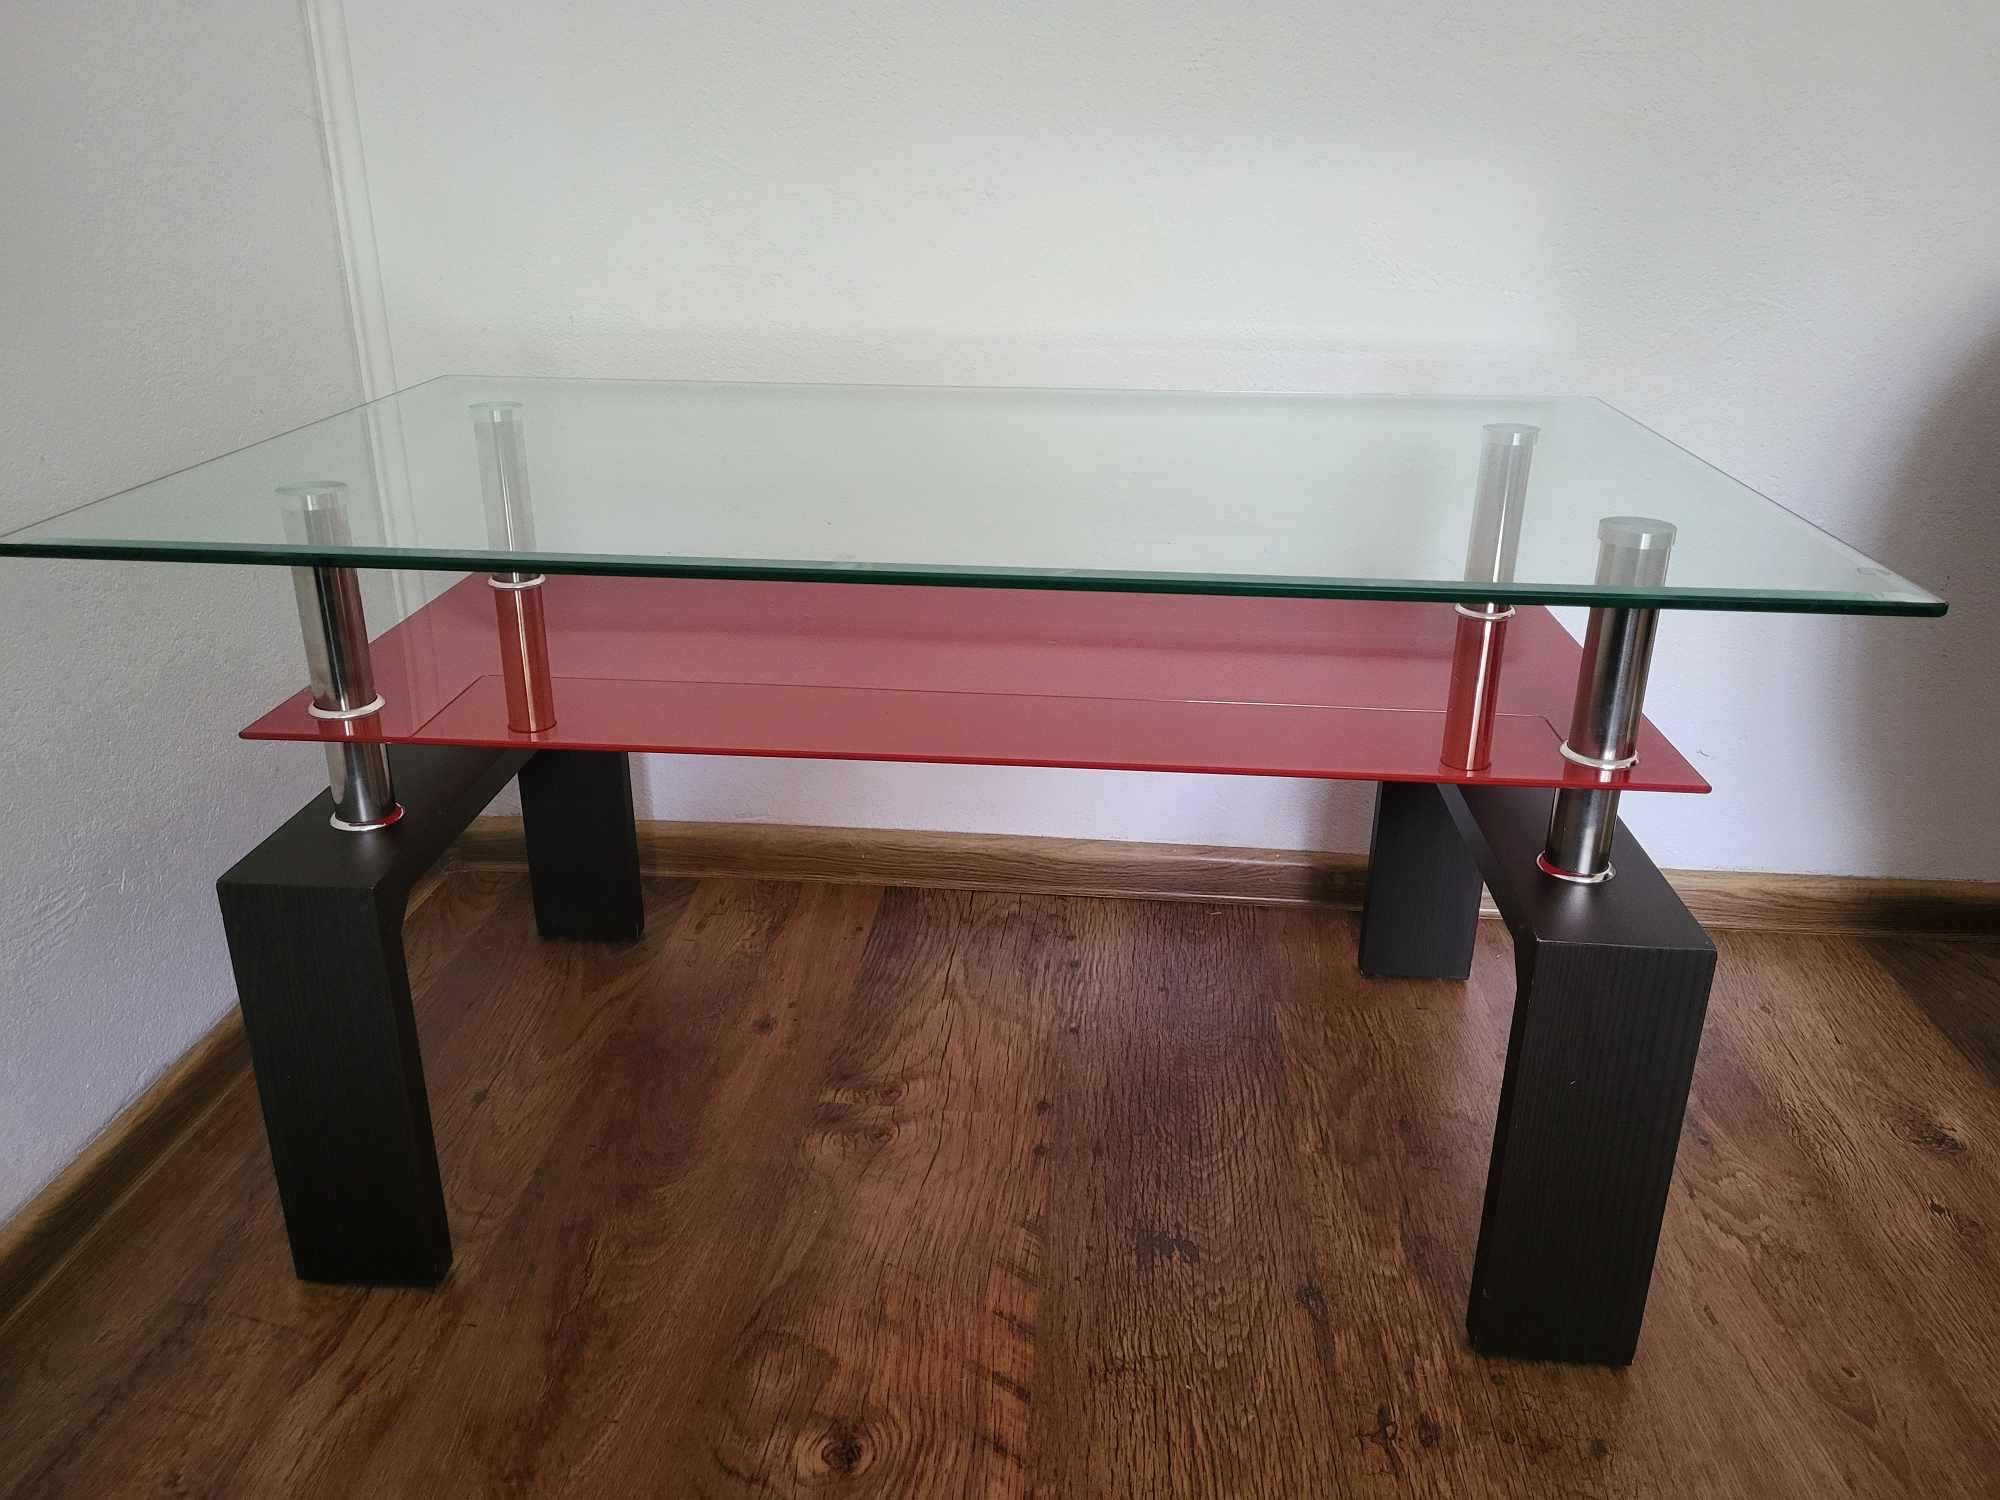 szklany stolik kawowy czerwony stolik prostokątny ława do salonu